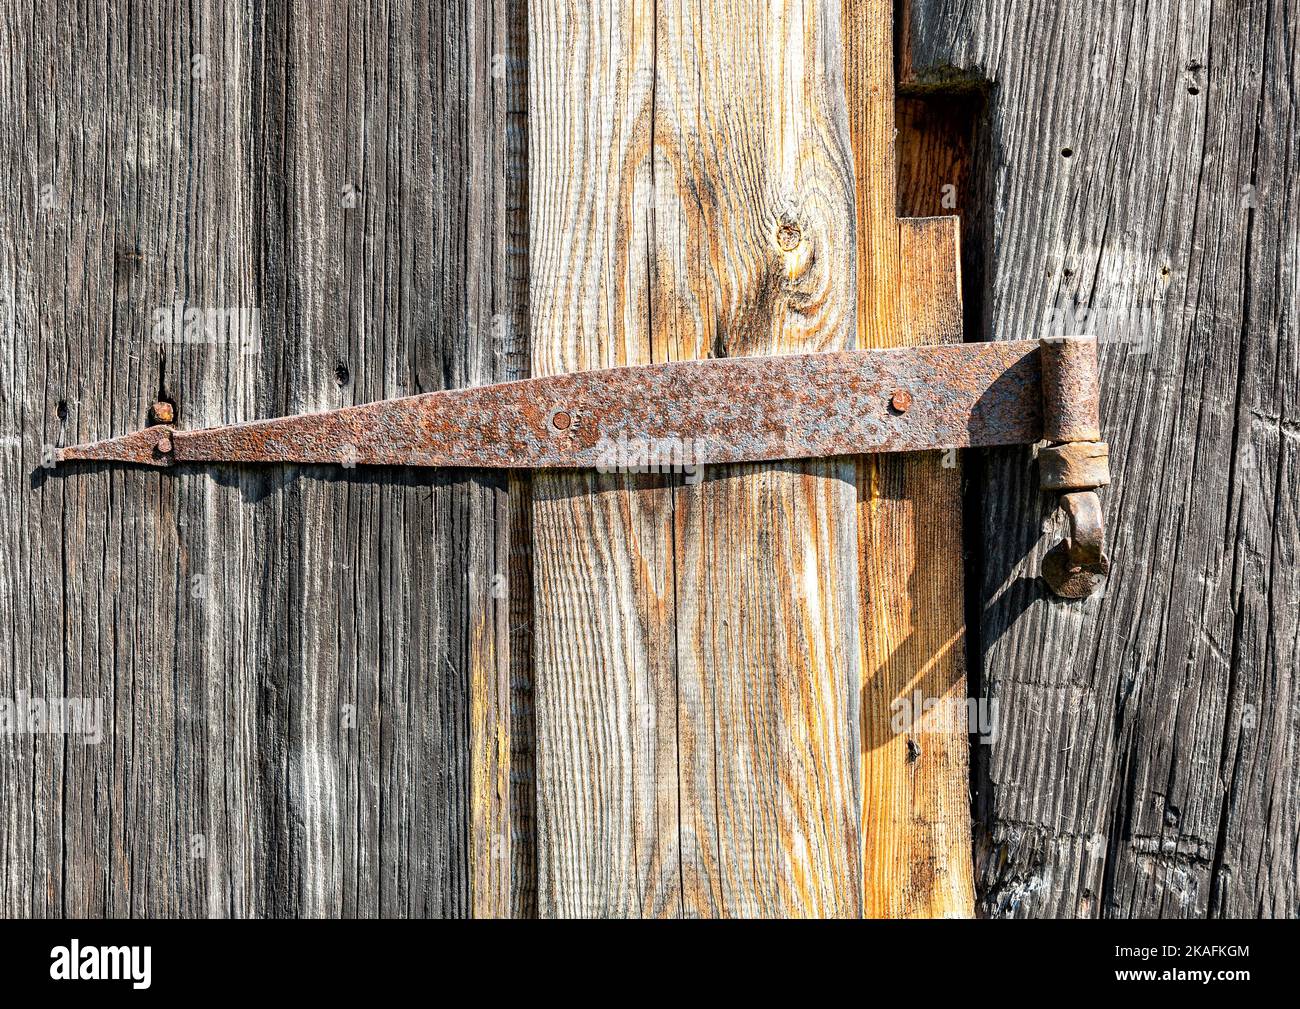 Old rusty forged metal door hinge screwed to a wooden door Stock Photo